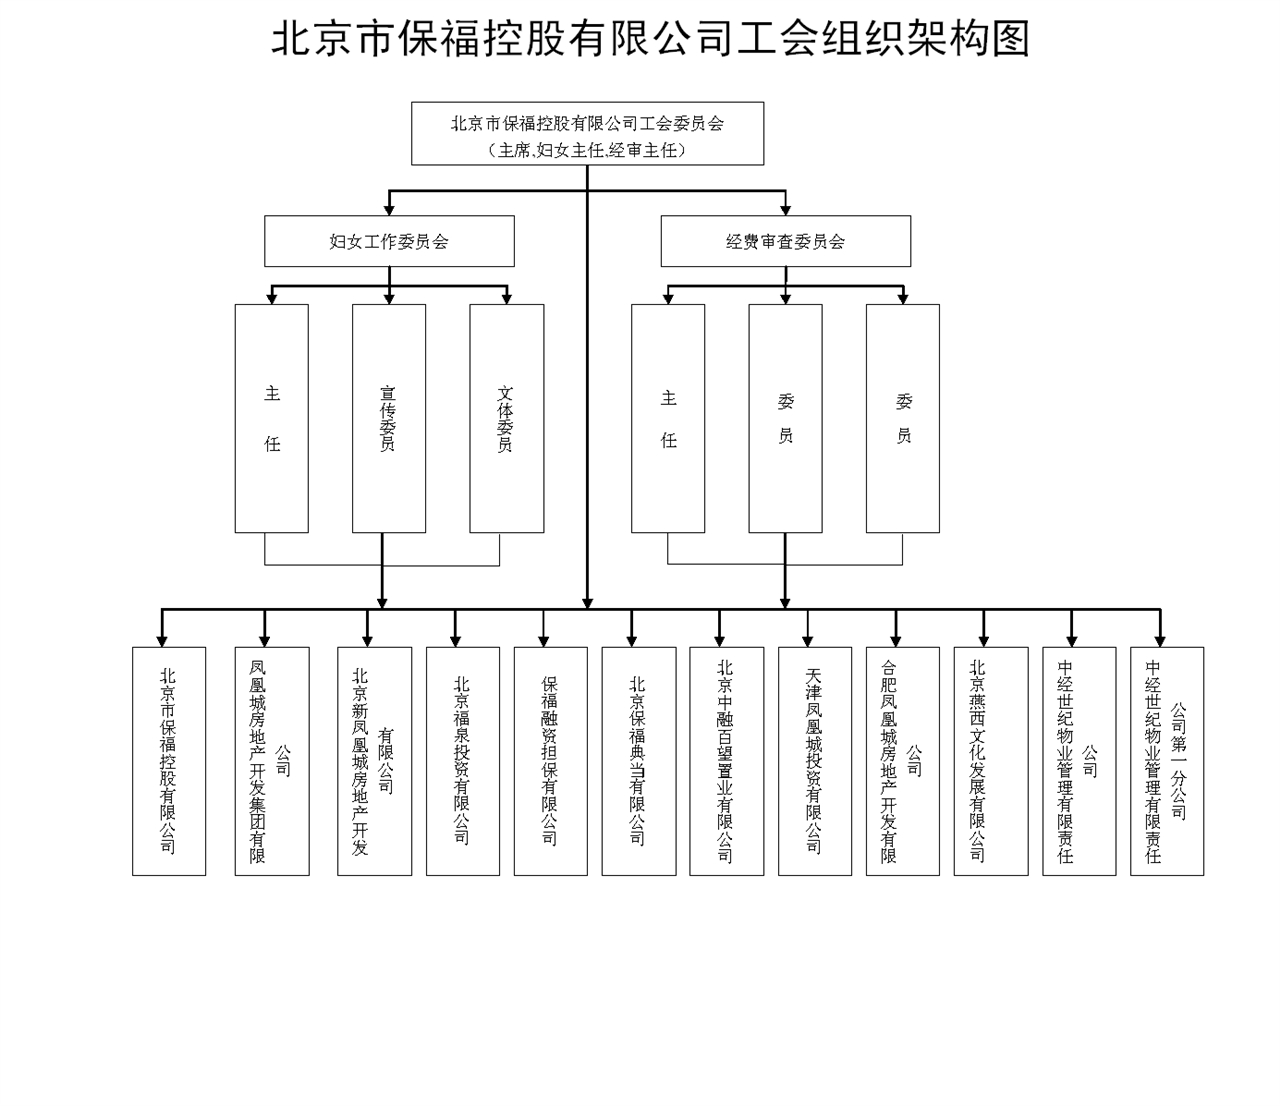 北京市保福控股有限公司工会组织架构图